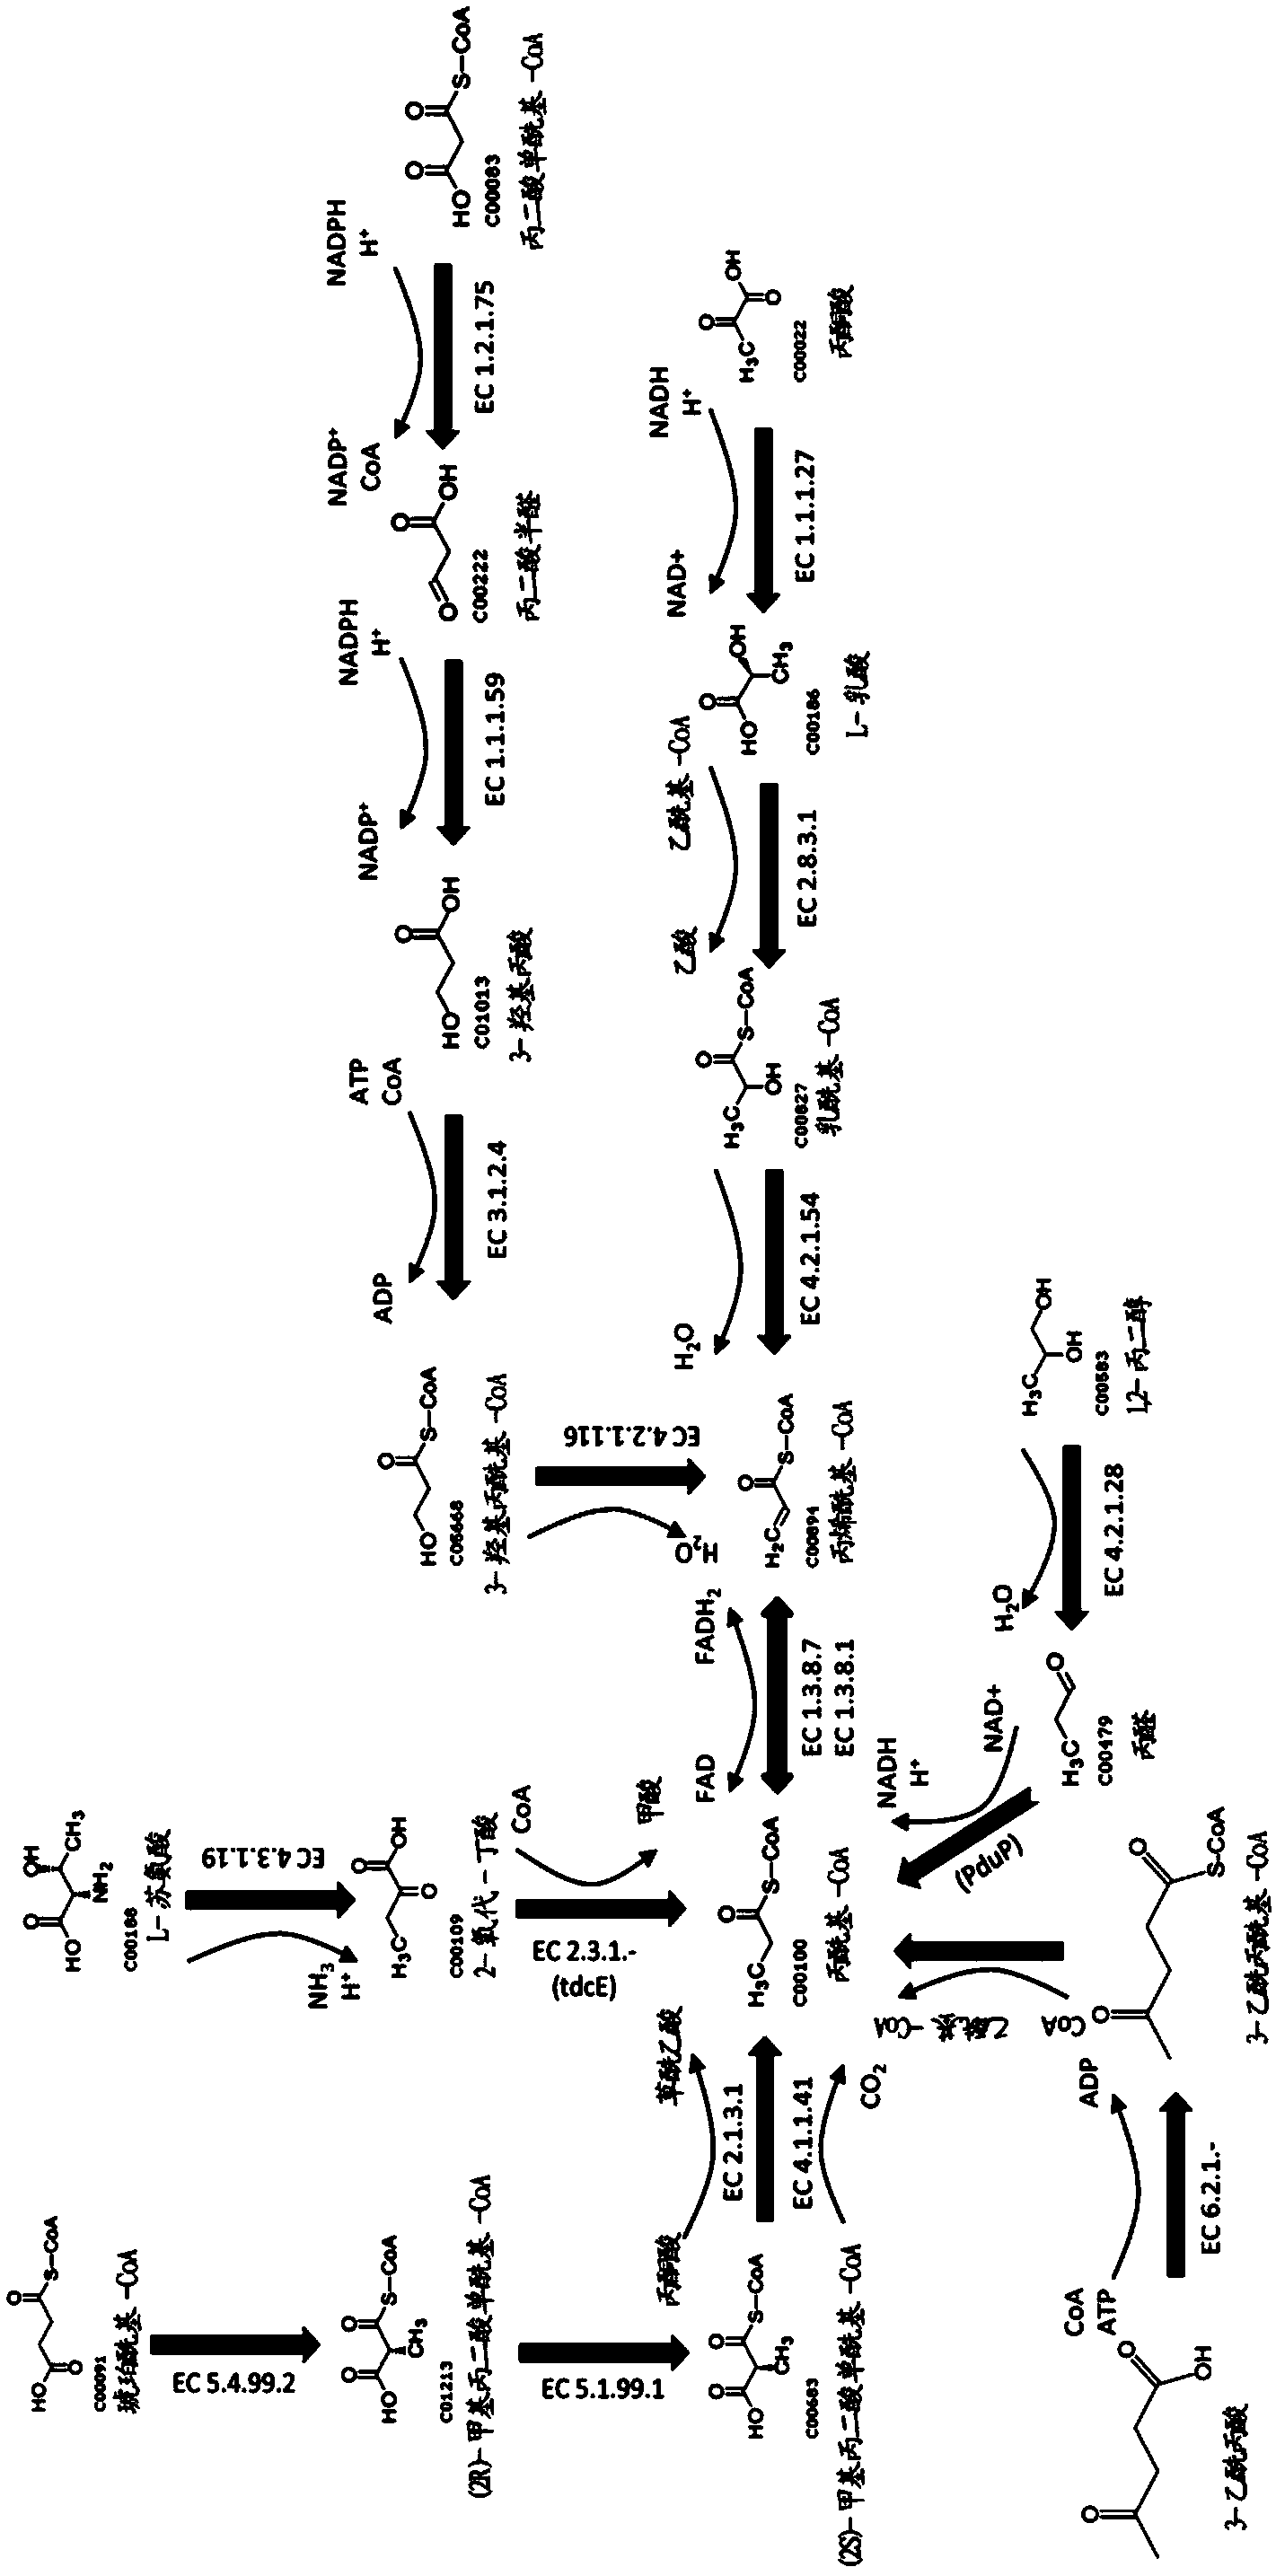 Methods for biosynthesizing 1,3butadiene